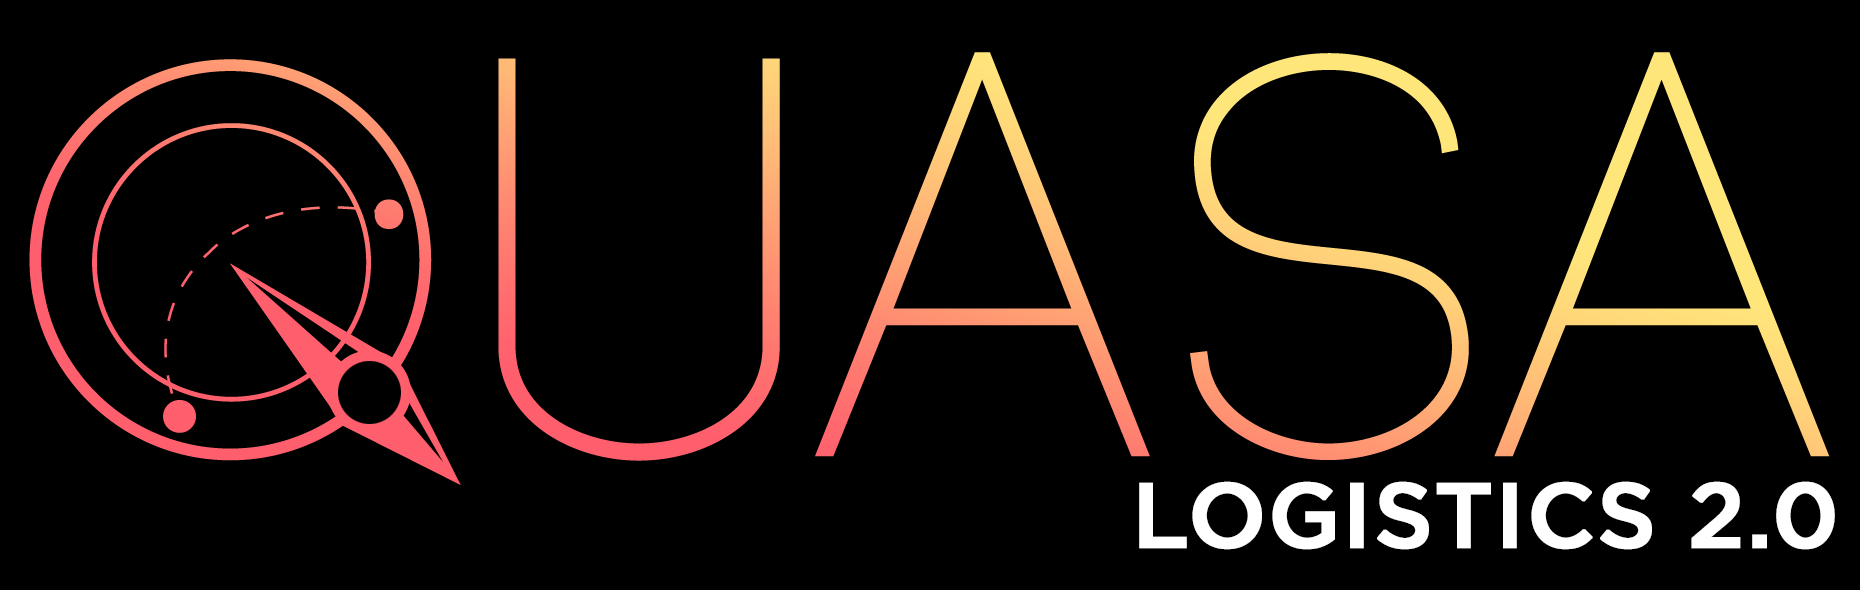 QUASA_2018 Logo